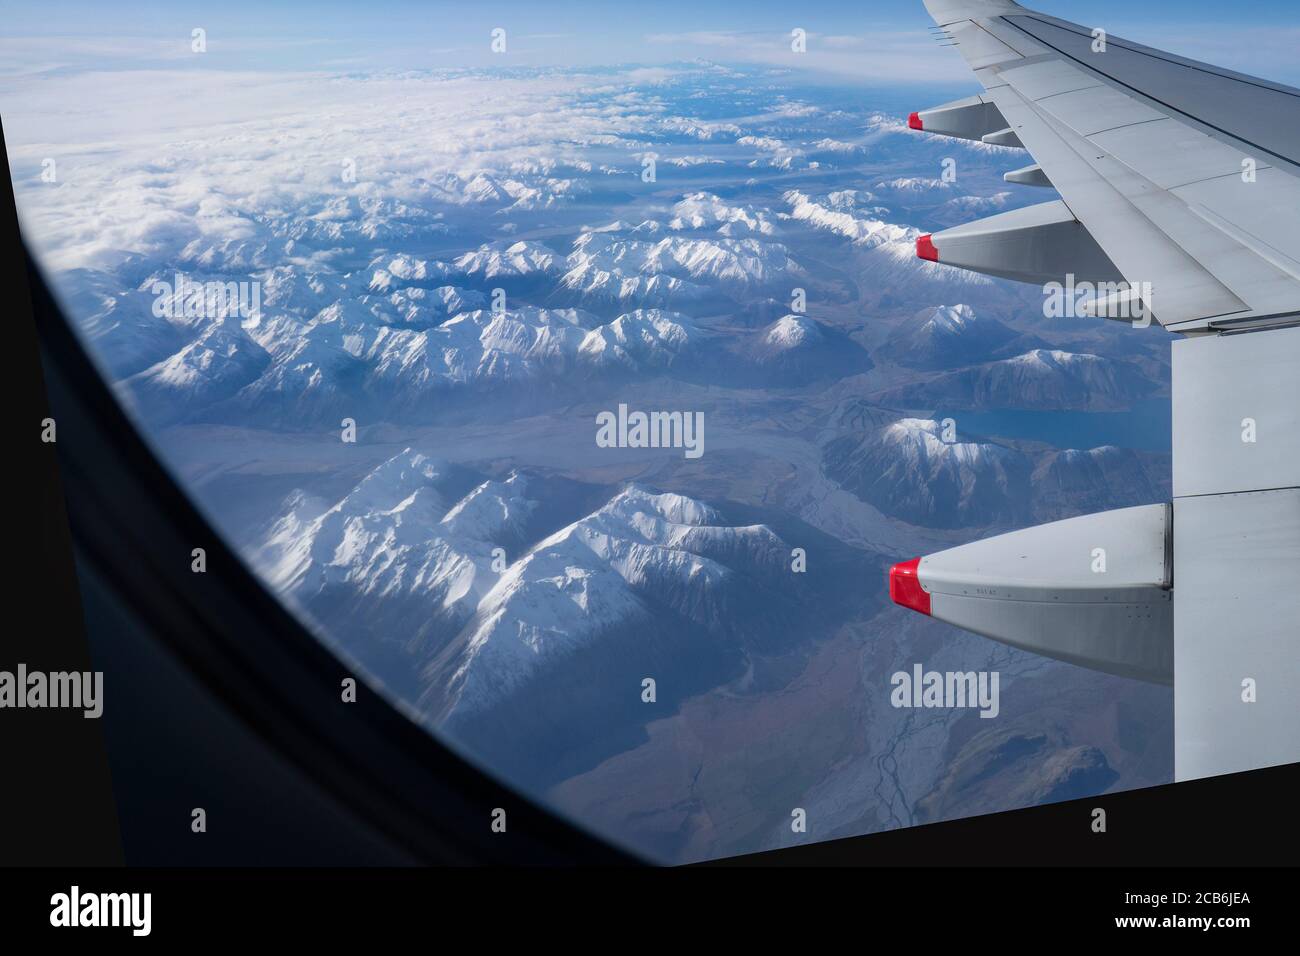 Vista aerea delle montagne e dei fiumi innevati dell'Isola del Sud in inverno da una finestra dell'aeroplano. Immagine tratta dal volo che si avvicina a Queenstown. Foto Stock